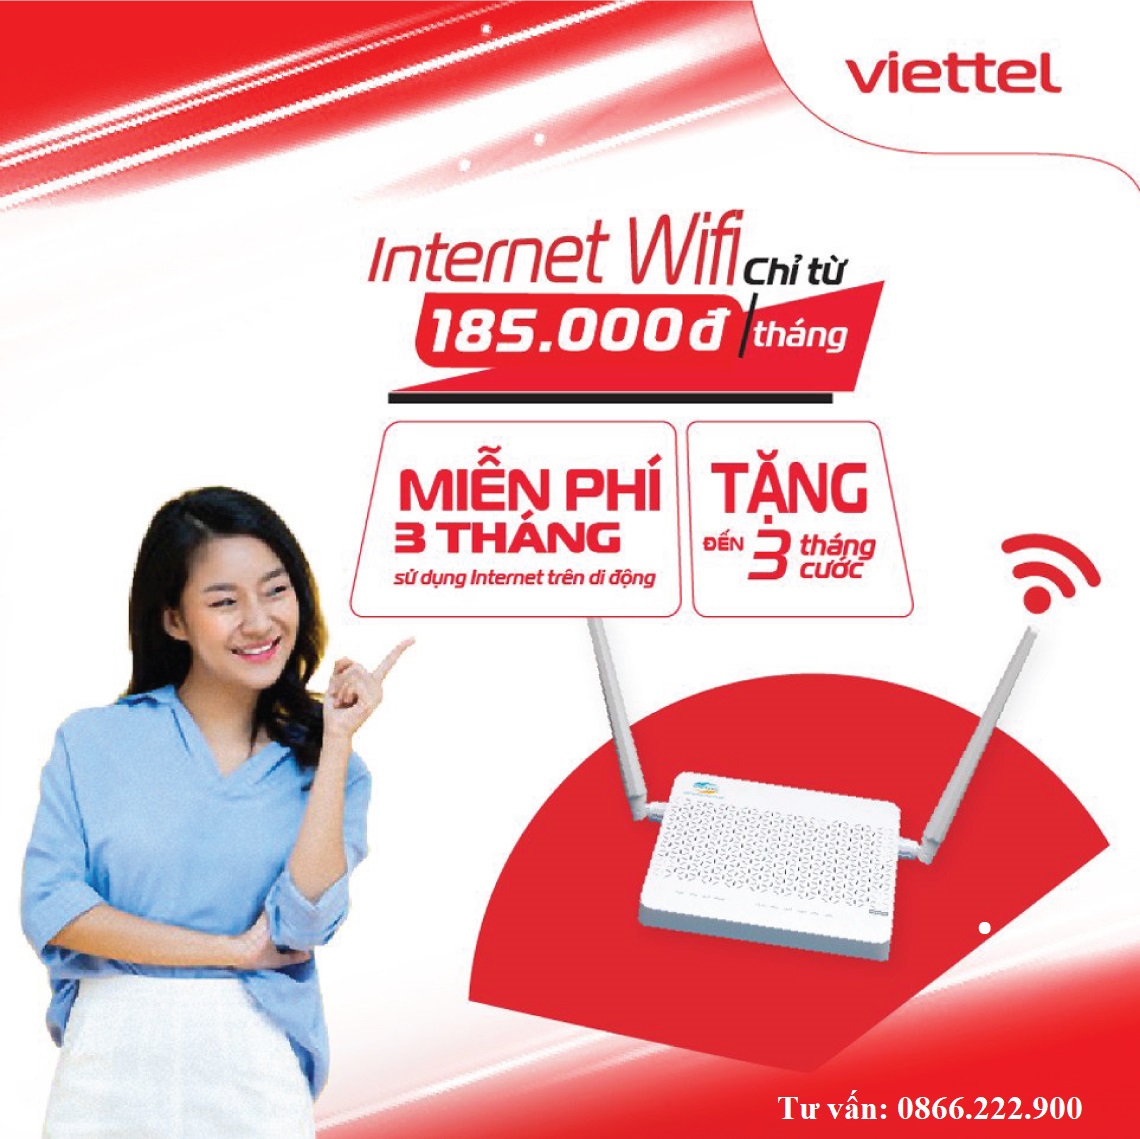 Lắp đặt internet Viettel Tp.HCM miễn phí, tặng wifi 4 cổng